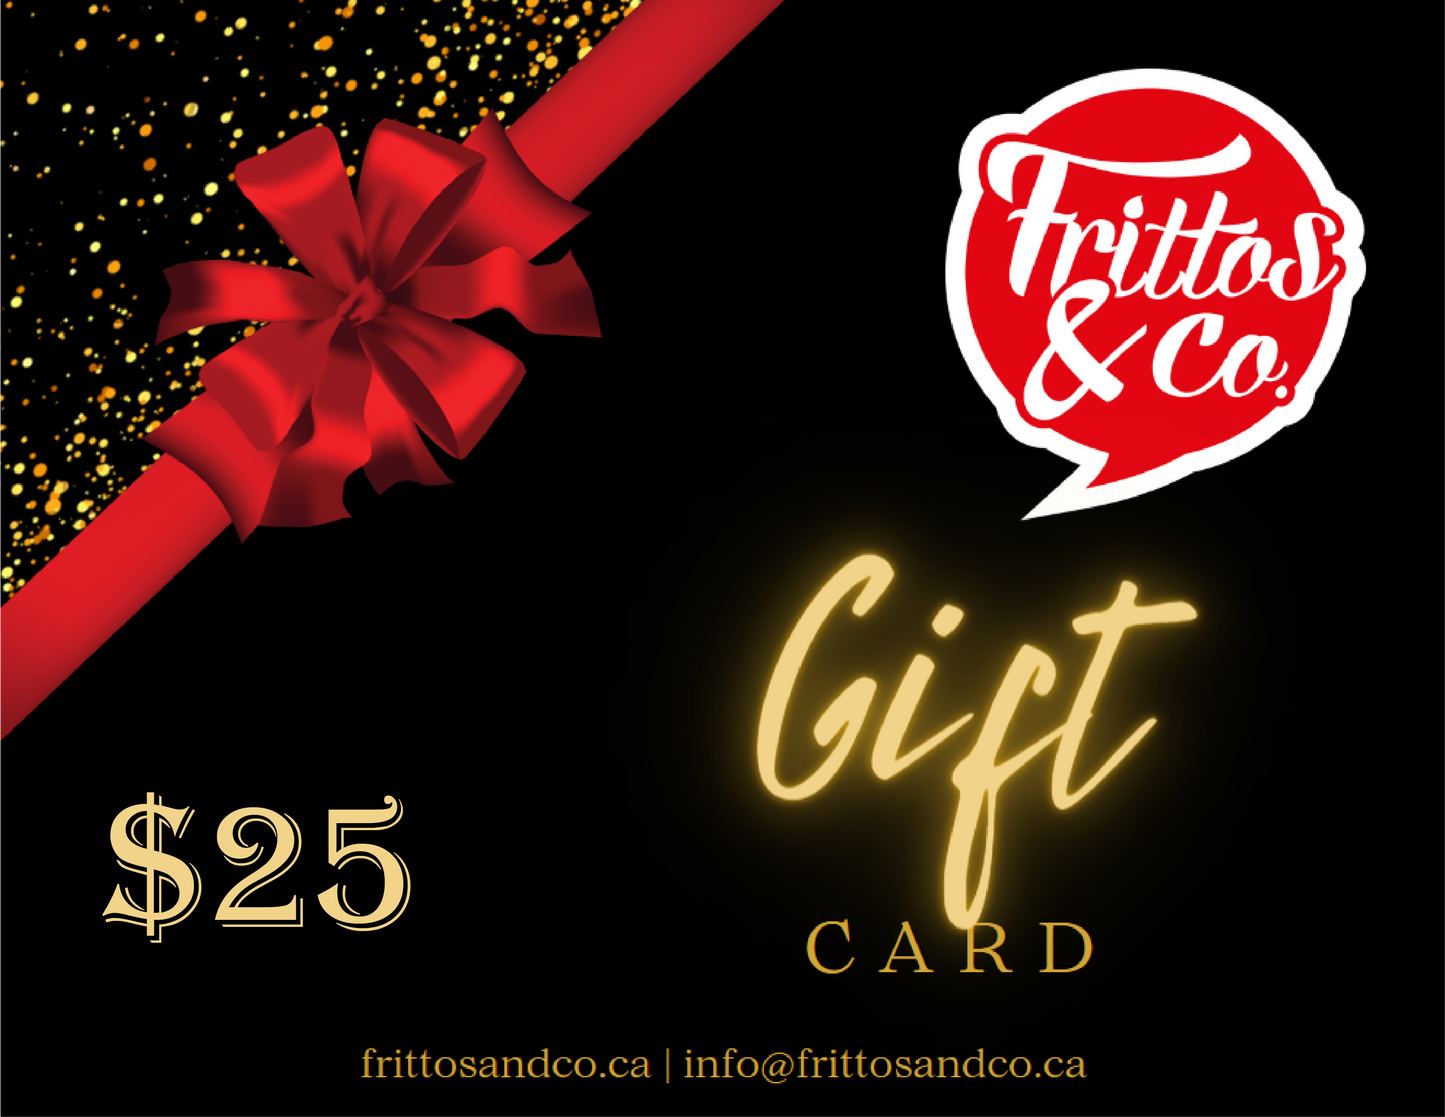 Frittos & Co. Gift Card